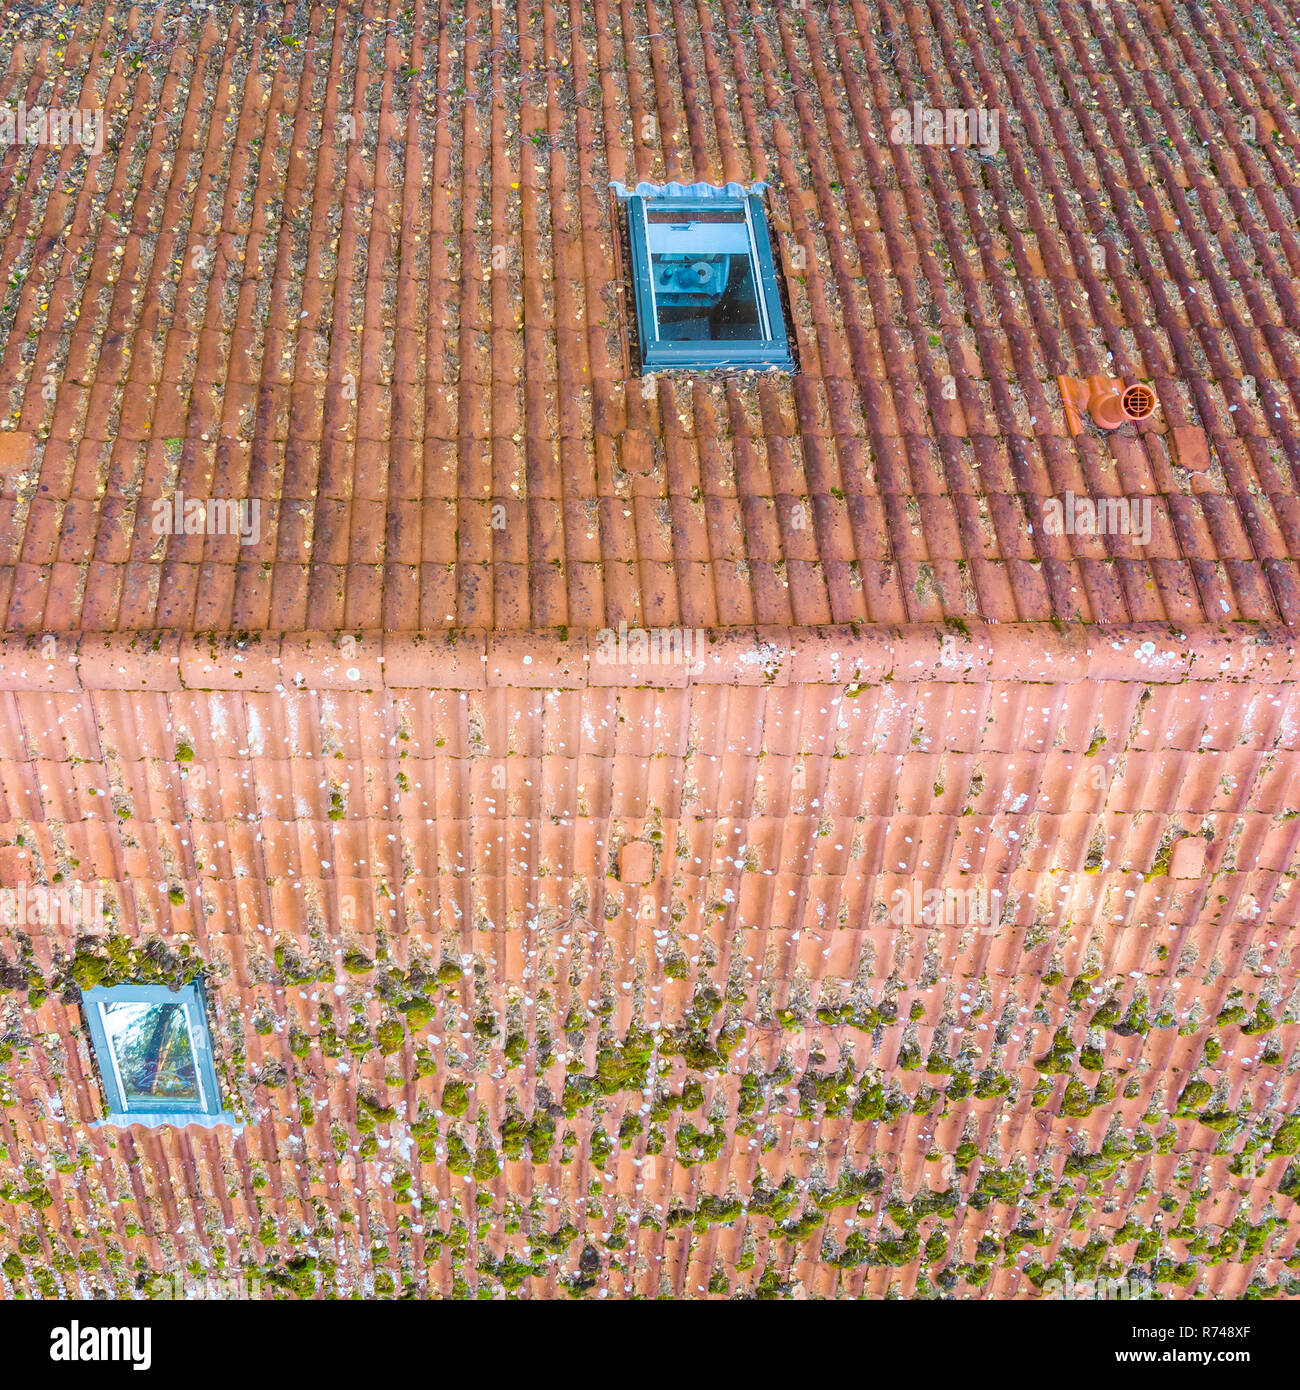 Prüfung der roten Ziegeldach eines Einfamilienhaus, die Ziegel auf dem Dach eines Einfamilienhauses. Stockfoto